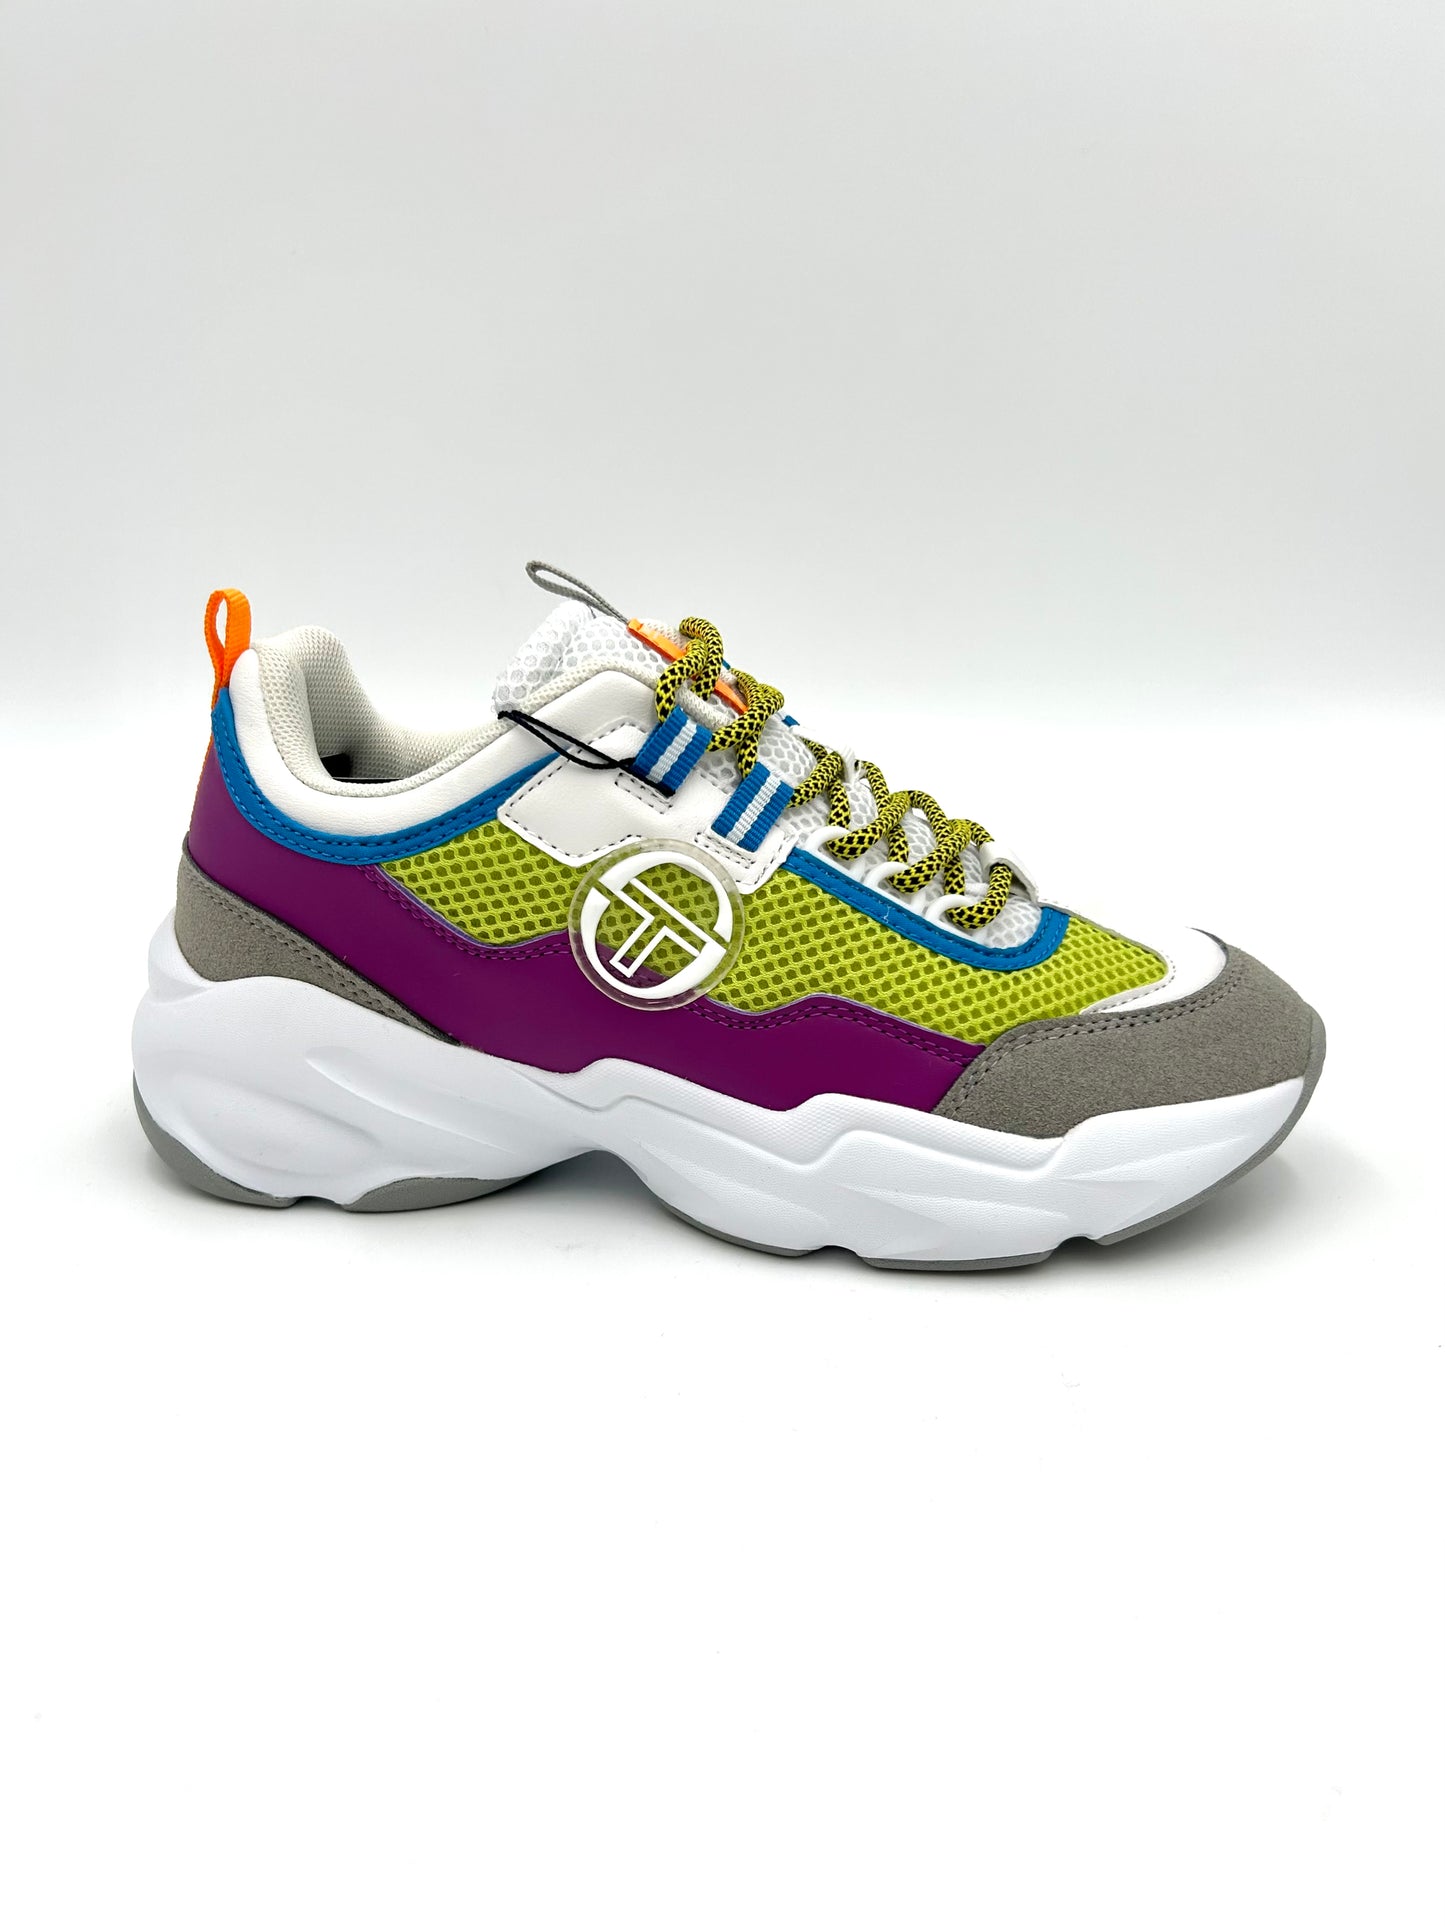 Sergio Tacchini Sneakers colors - green, grey, purple - Sergio Tacchini